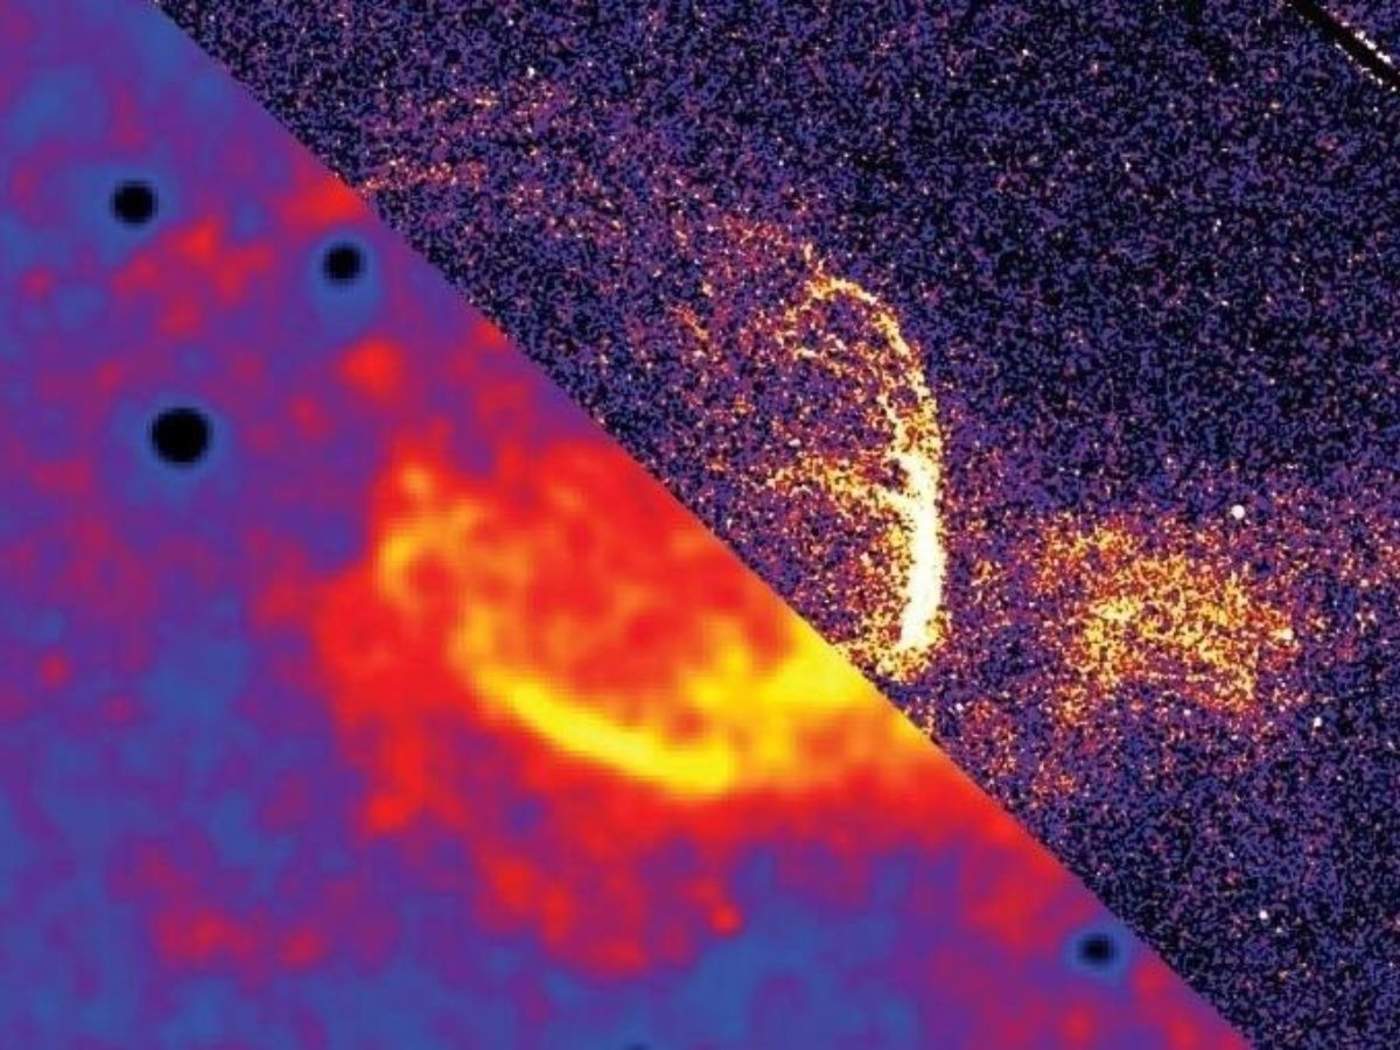 Observan burbuja interestelar en galaxia de Andrómeda